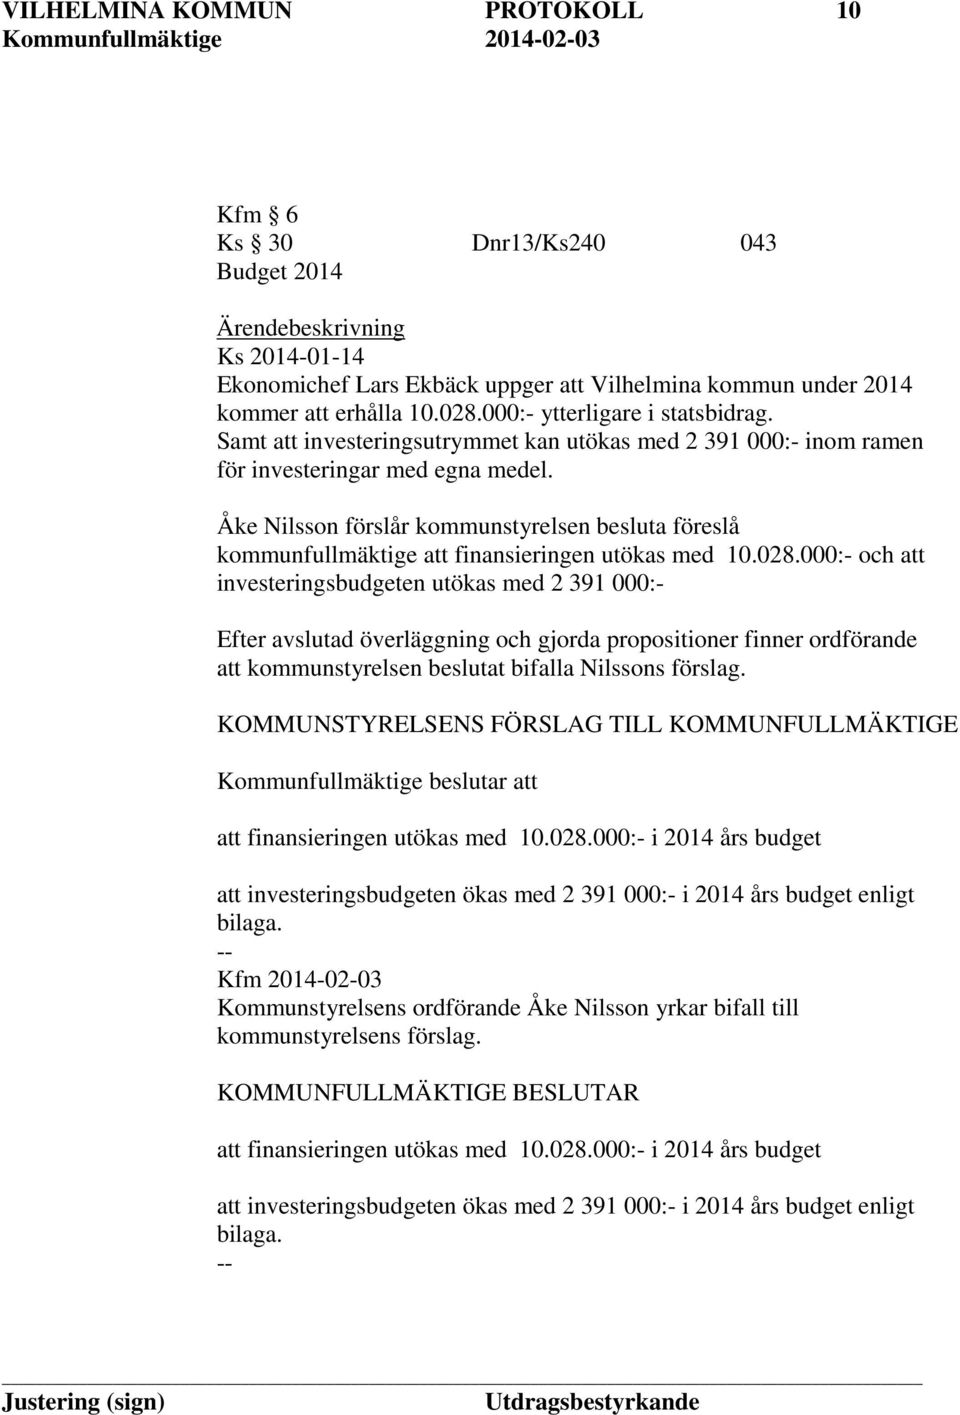 Åke Nilsson förslår kommunstyrelsen besluta föreslå kommunfullmäktige att finansieringen utökas med 10.028.